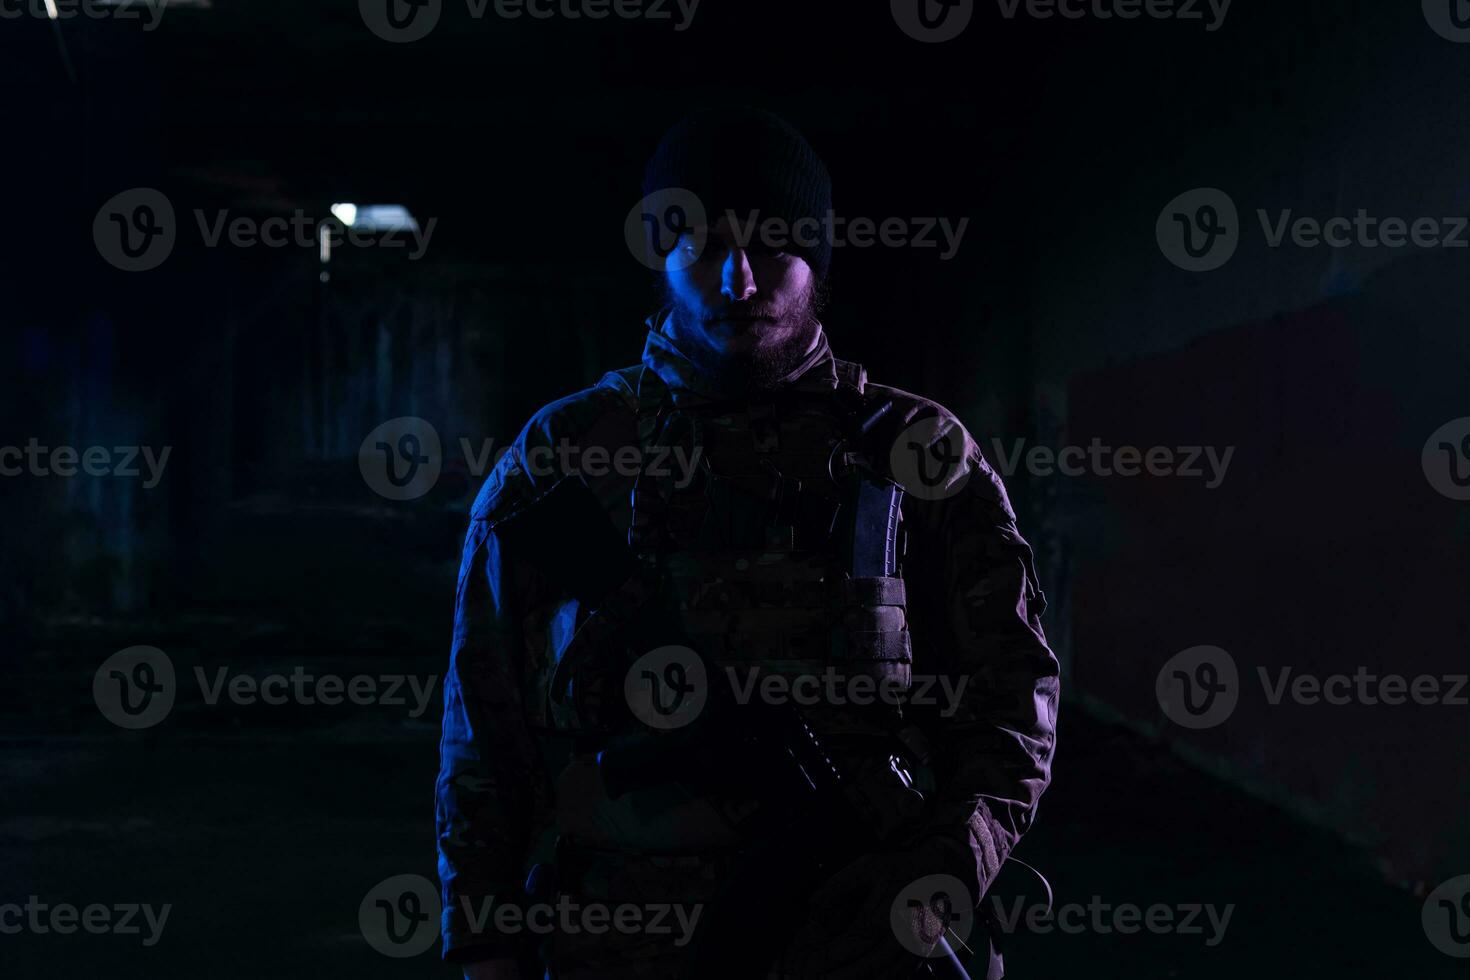 armén soldat i bekämpa uniformer med ett överfall gevär och bekämpa hjälm natt uppdrag mörk bakgrund. blå och lila gel ljus effekt. foto